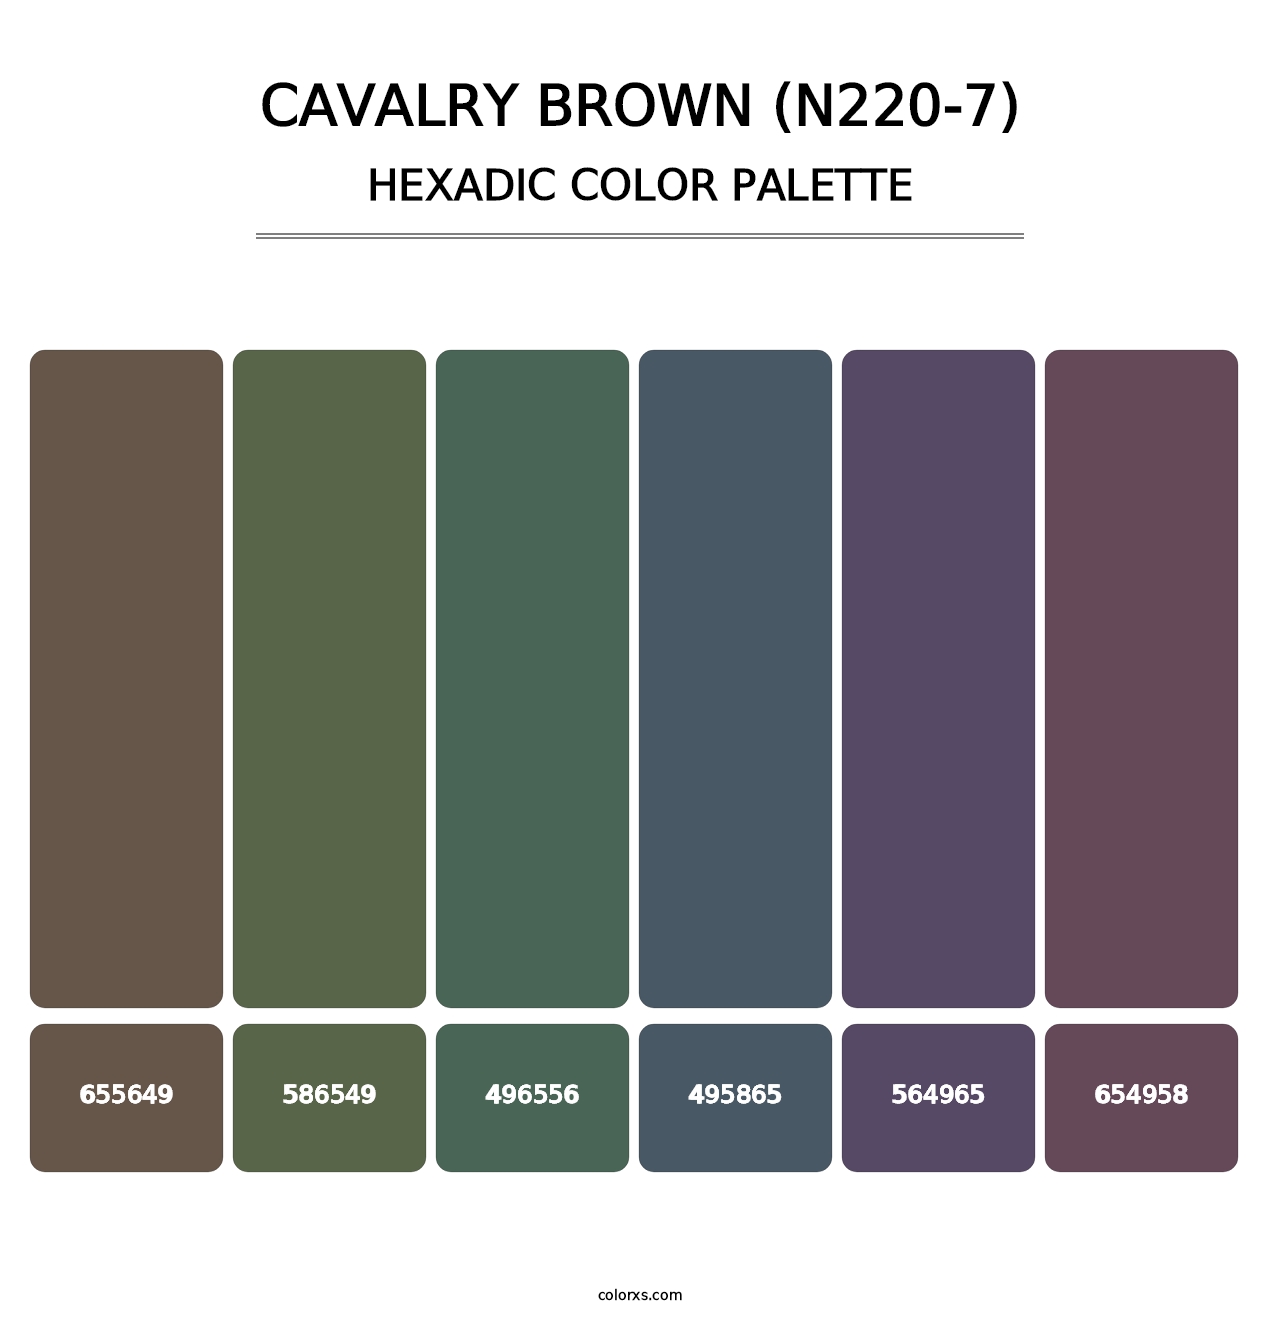 Cavalry Brown (N220-7) - Hexadic Color Palette